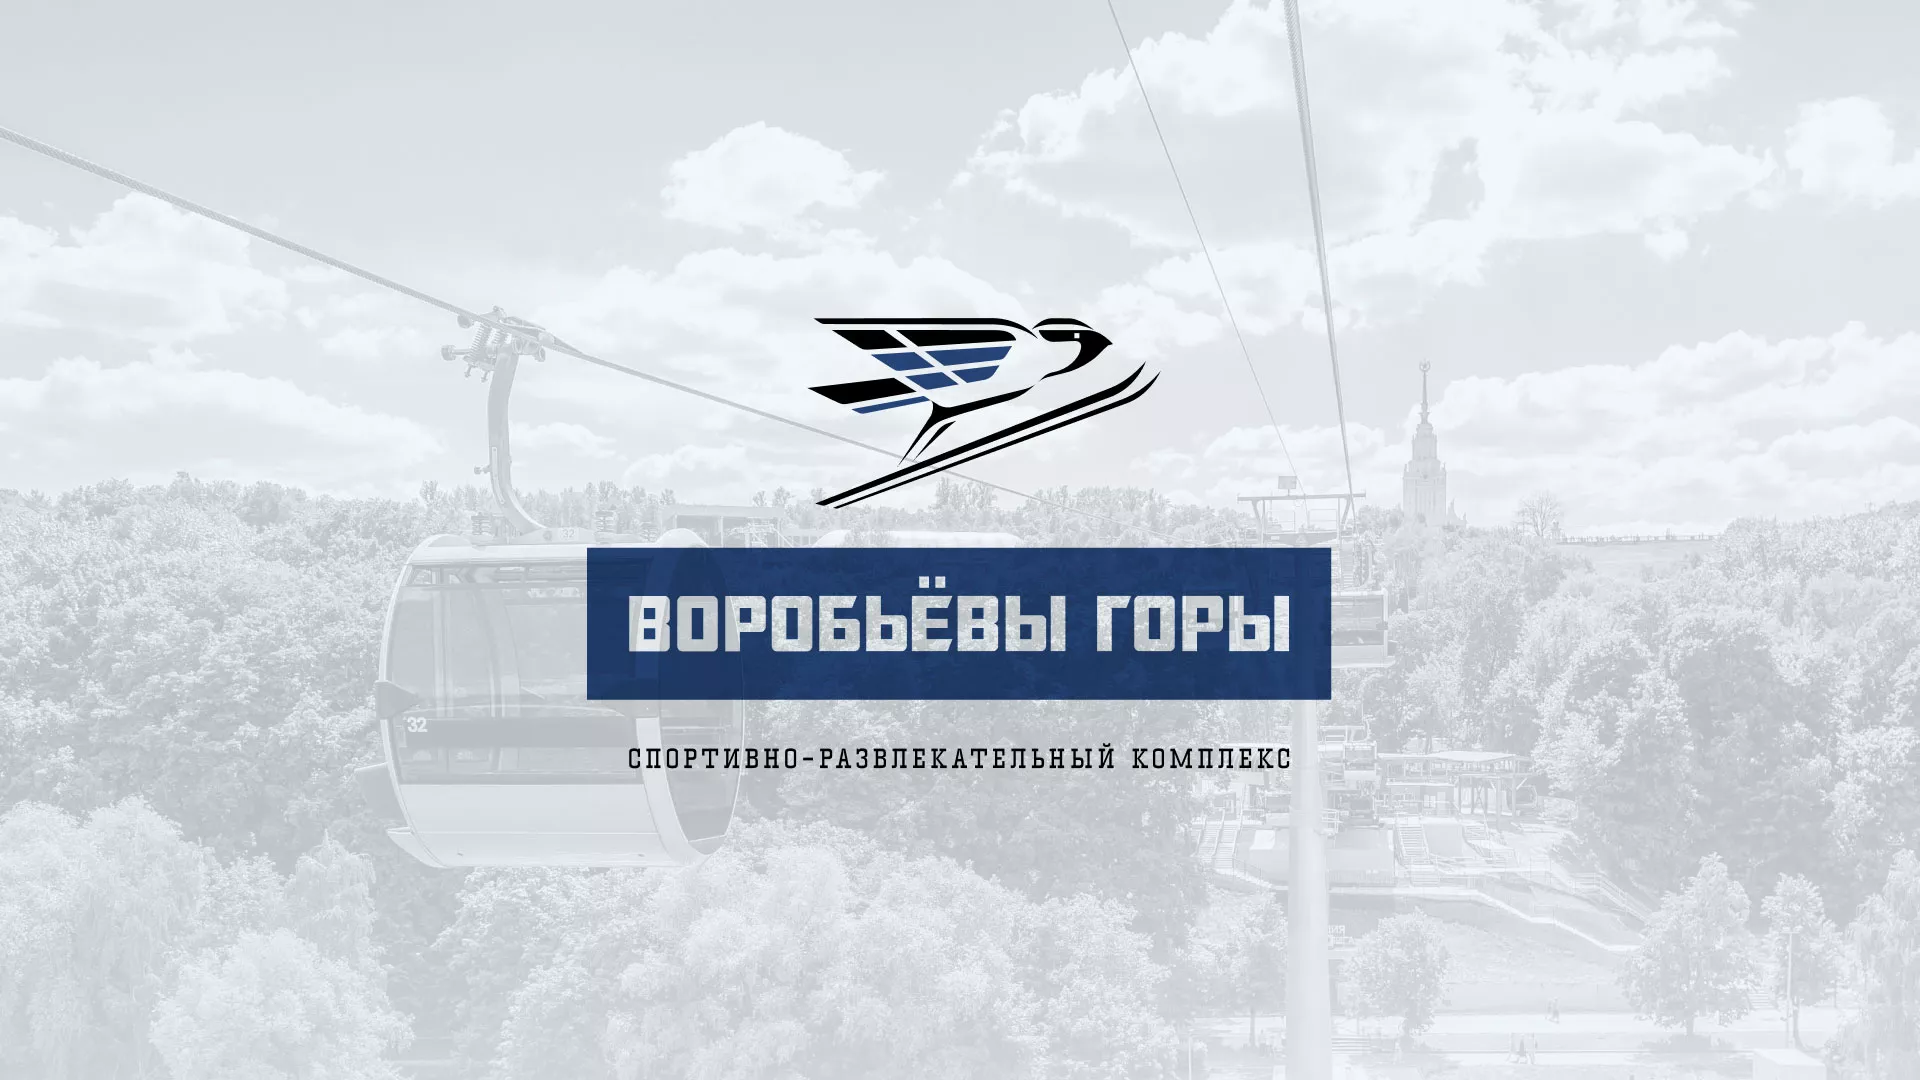 Разработка сайта в Белорецке для спортивно-развлекательного комплекса «Воробьёвы горы»